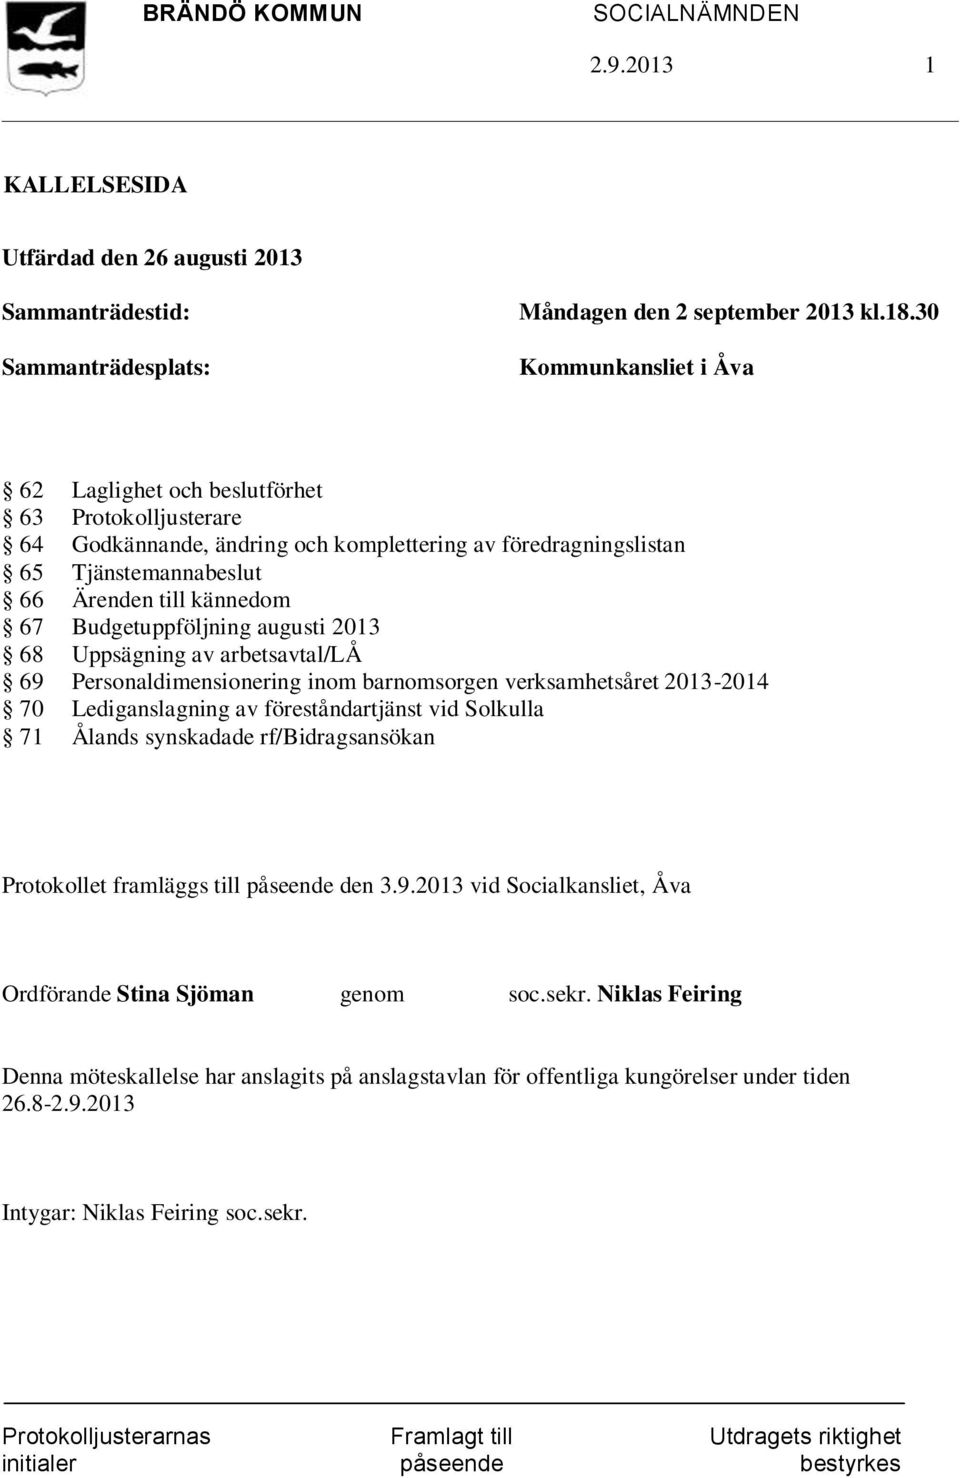 Budgetuppföljning augusti 2013 68 Uppsägning av arbetsavtal/lå 69 Personaldimensionering inom barnomsorgen verksamhetsåret 2013-2014 70 Lediganslagning av föreståndartjänst vid Solkulla 71 Ålands